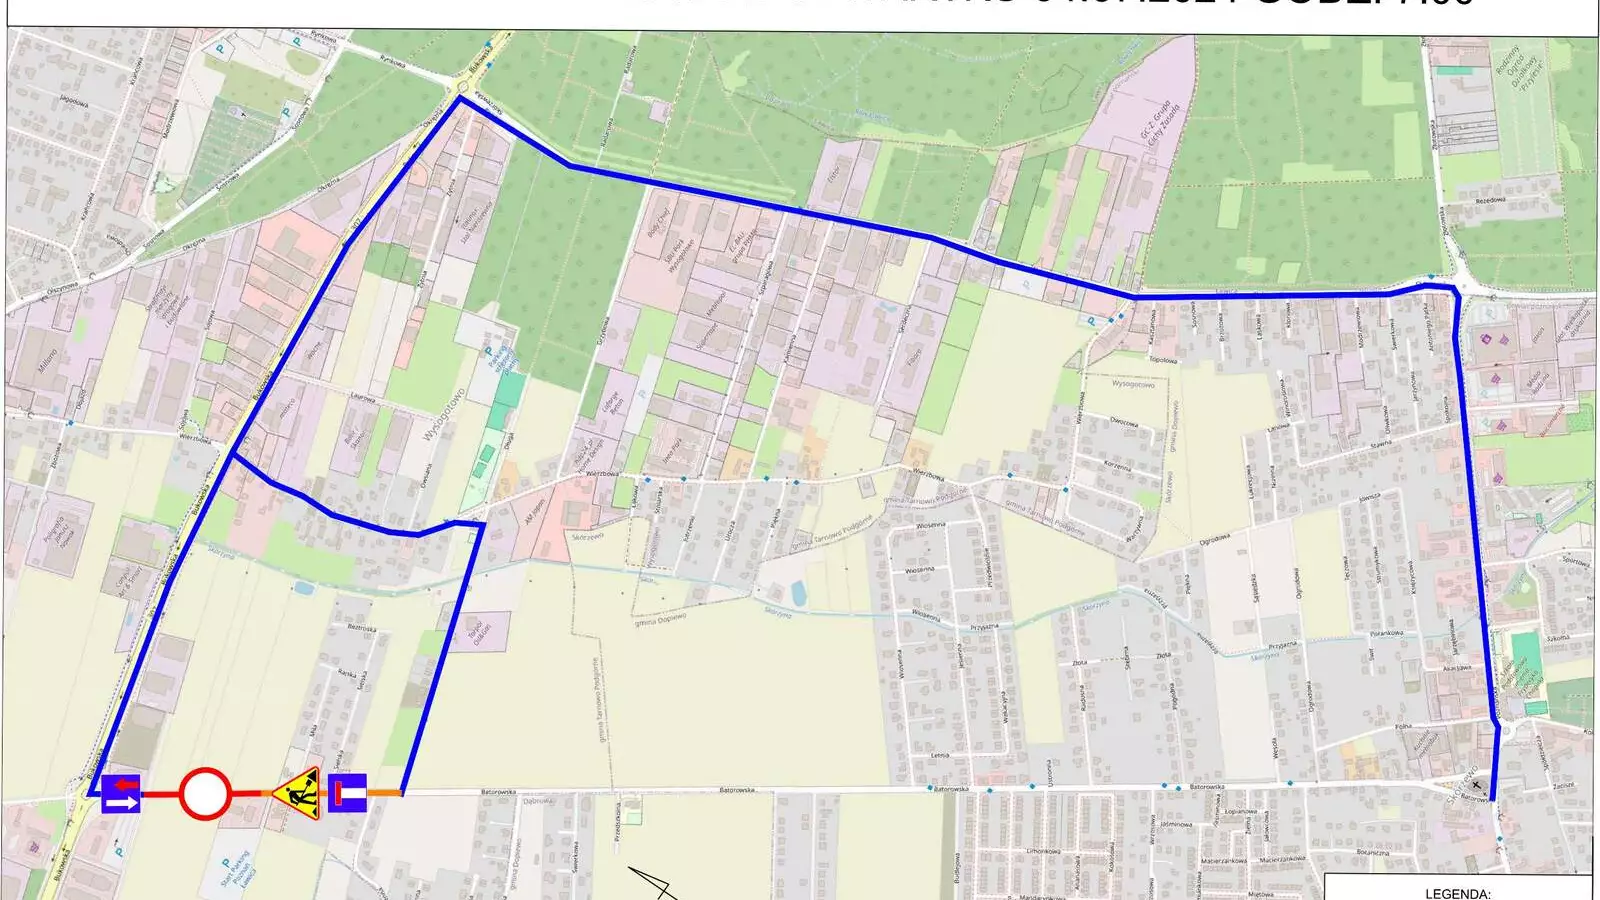 Zdjęcie mapy przedstawiające zmiany w organizacji ruchu na ul. Batorowskiej